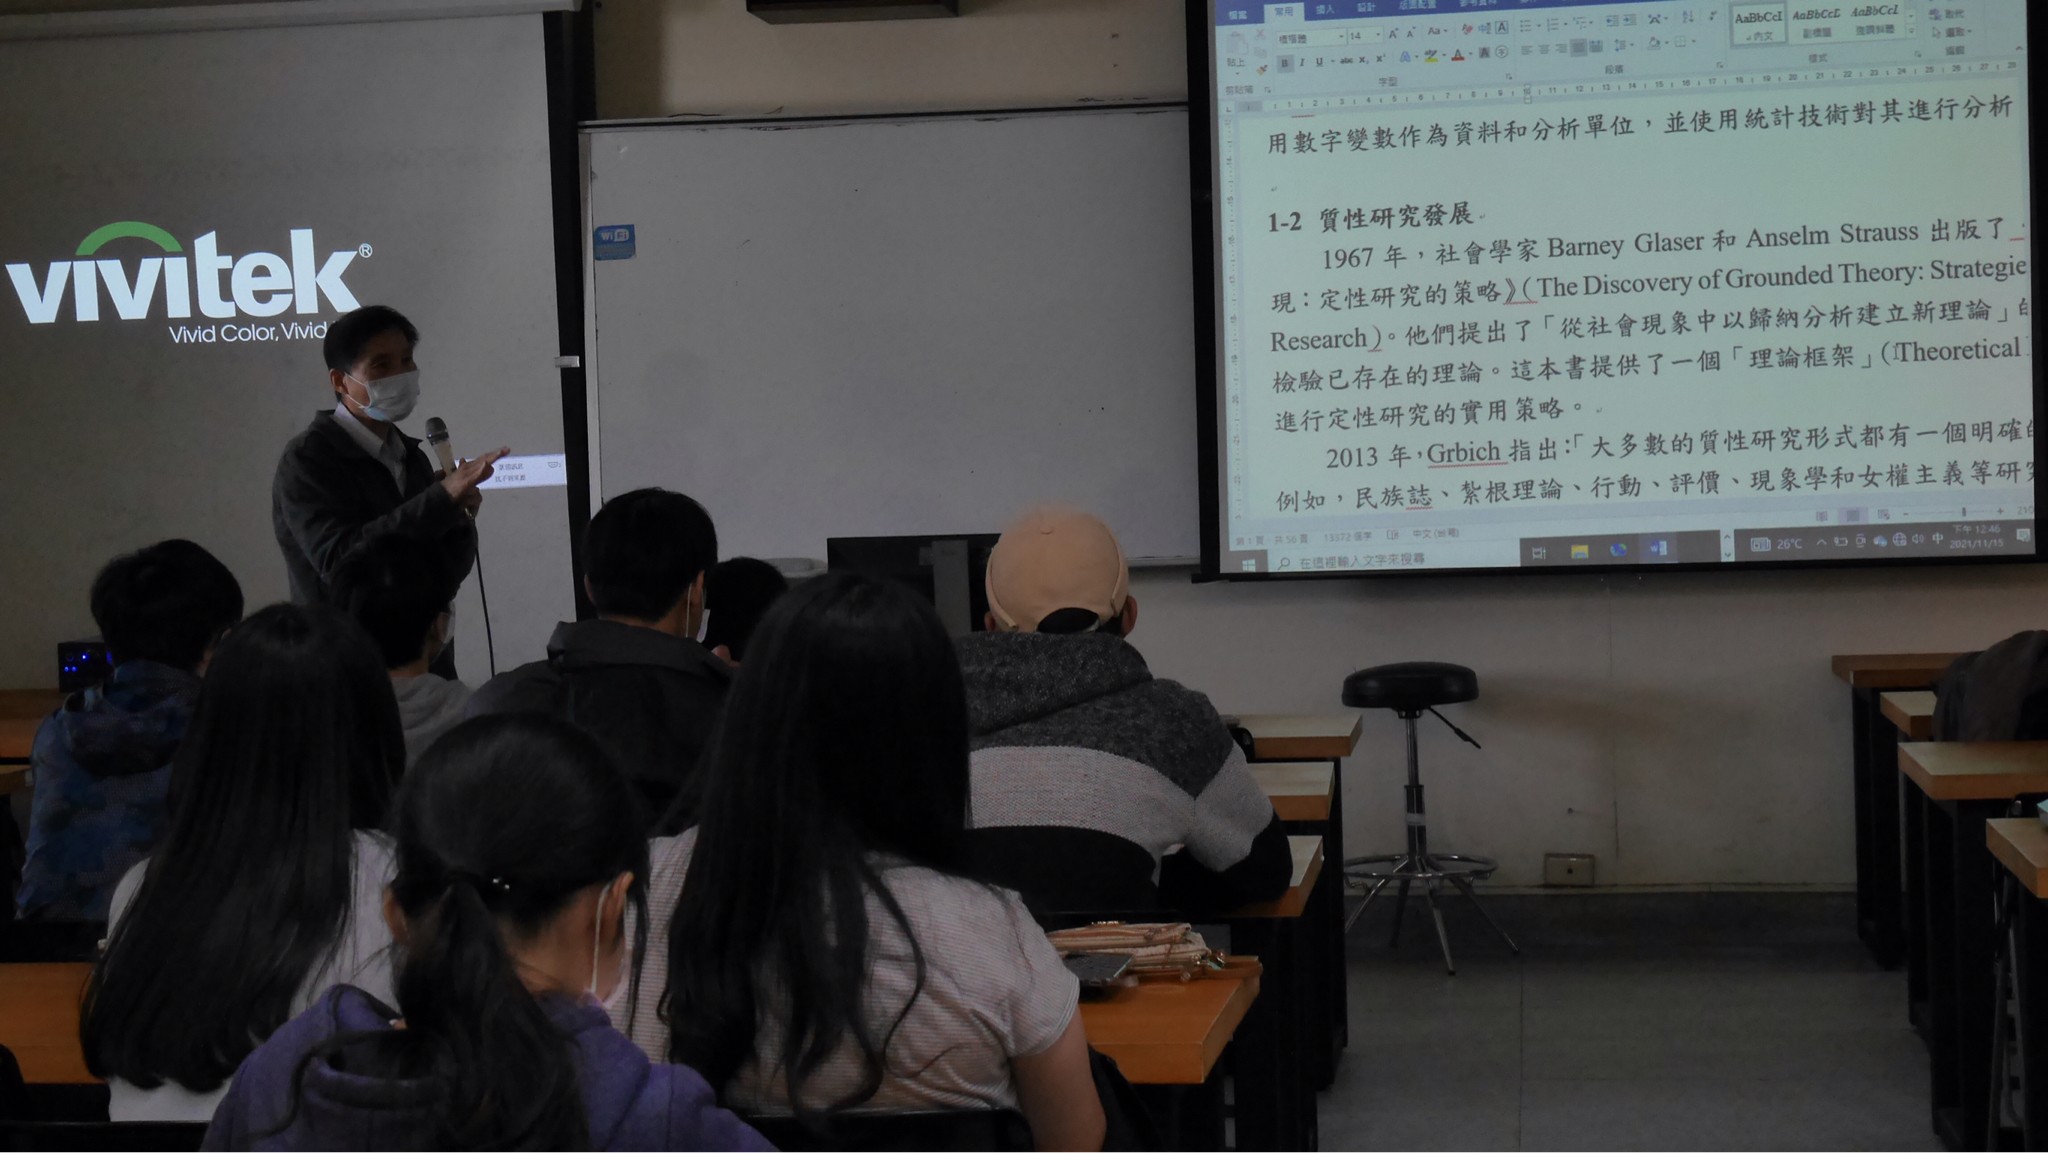 中央警察大學資訊管理系吳國清教授演講